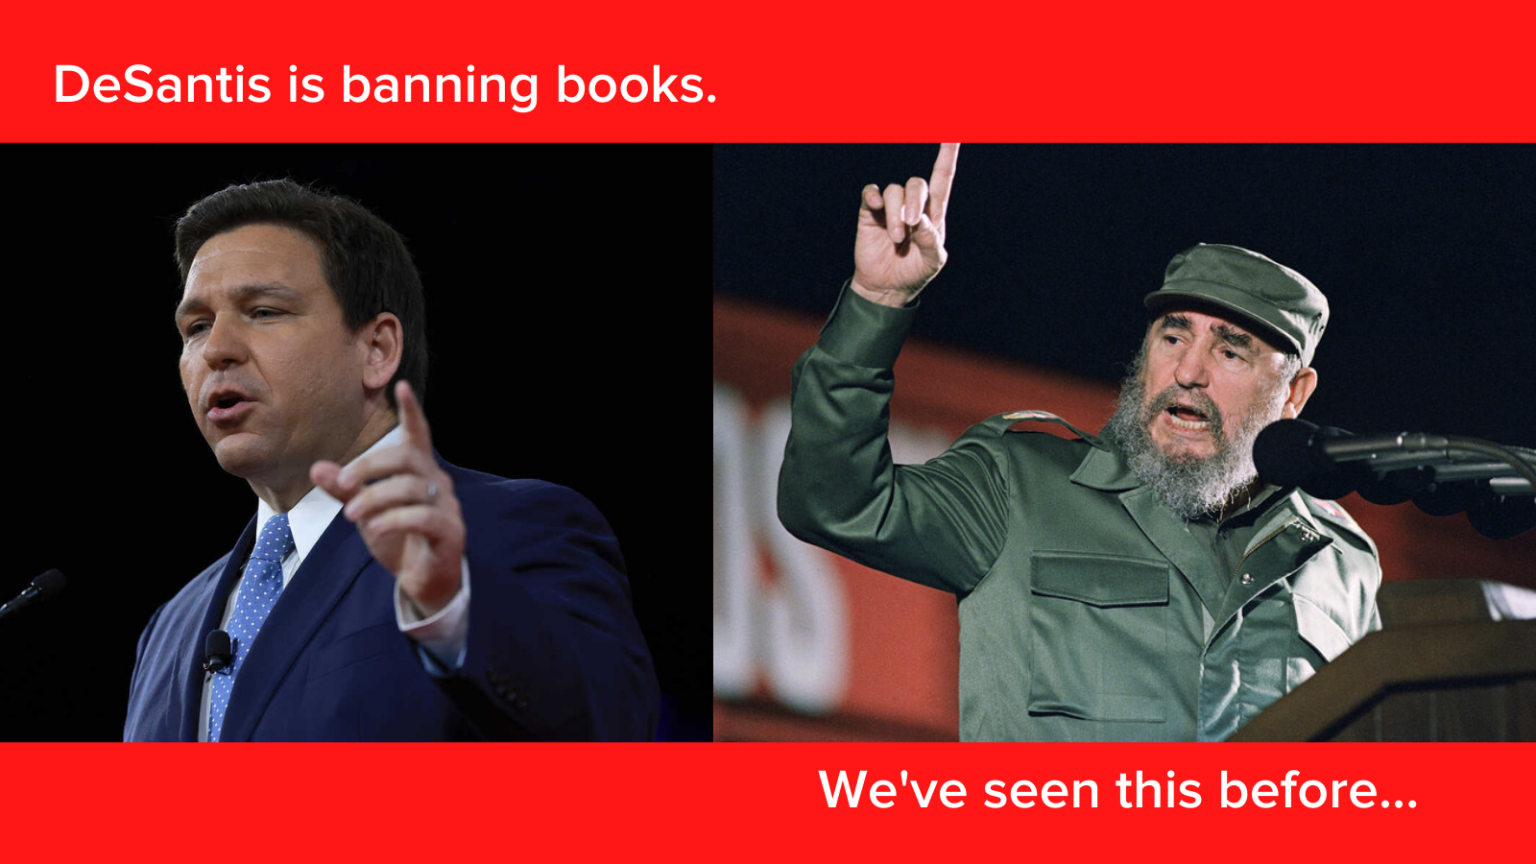 DeSantis, Castro gibi kitapları yasaklıyor